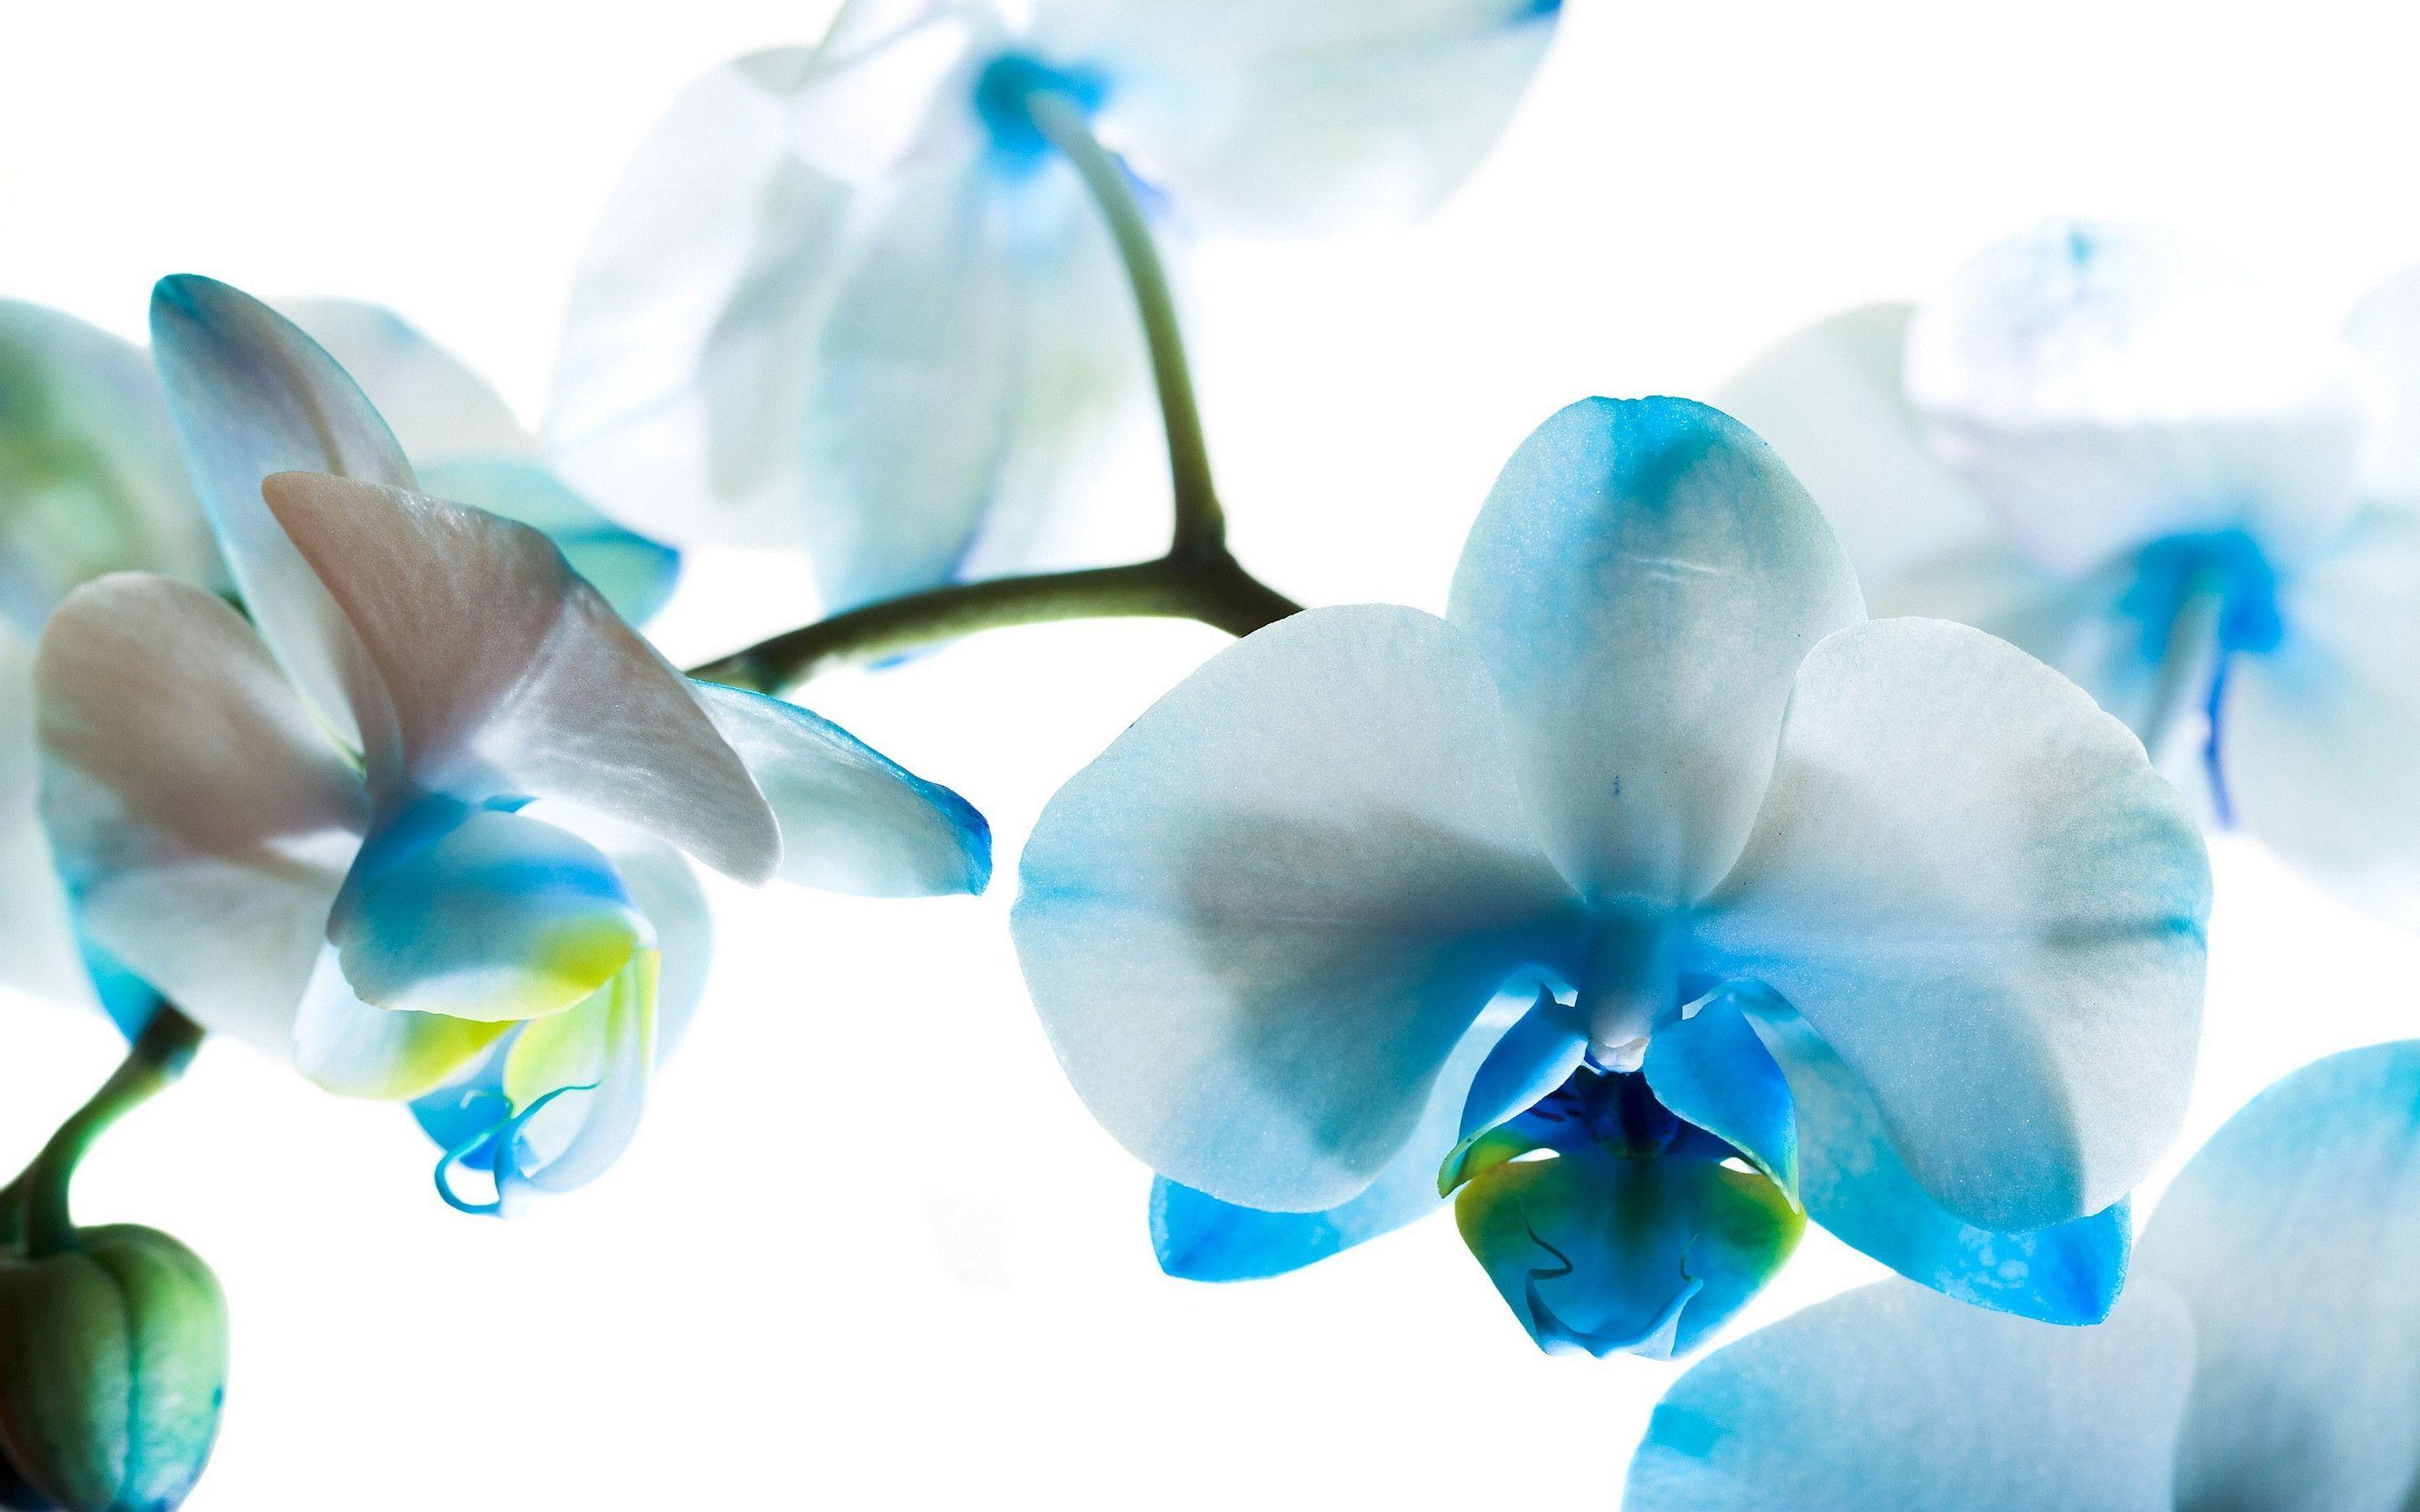 Hình nền hoa phong lan: Với một thiết kế thiên nhiên tươi mới tại độ phân giải cao, hình nền hoa phong lan này sẽ làm tươi mới không gian trên máy tính của bạn. Hòa mình vào không khí của mùa xuân, trải nghiệm các hoa phong lan mềm mại, thanh lịch, và thực sự đẹp đến từng chi tiết.